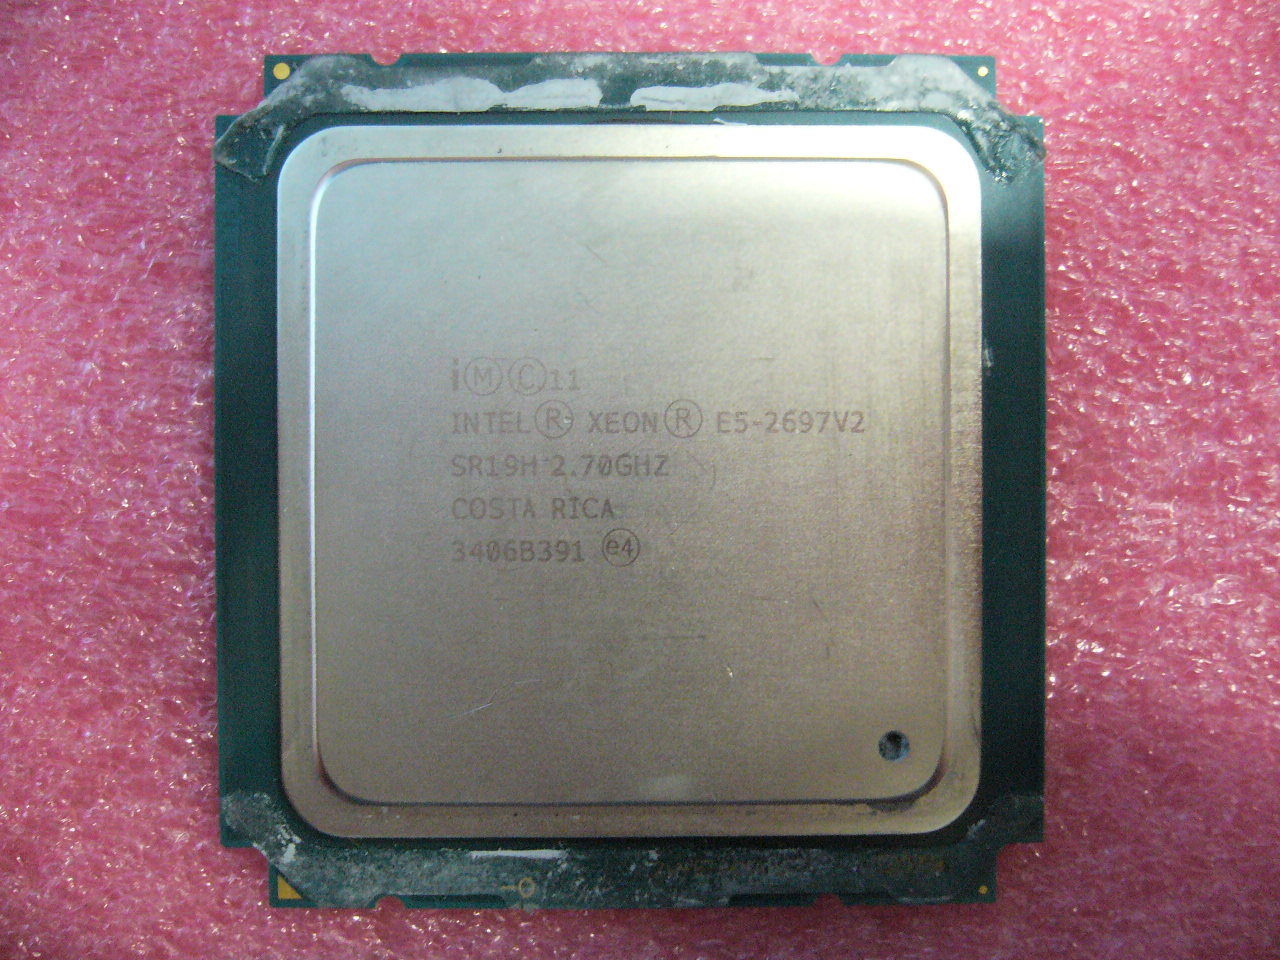 QTY 1x Intel E5-2697 V2 Xeon CPU 12-Cores 2.7Ghz 30MB Cache LGA2011 SR19H